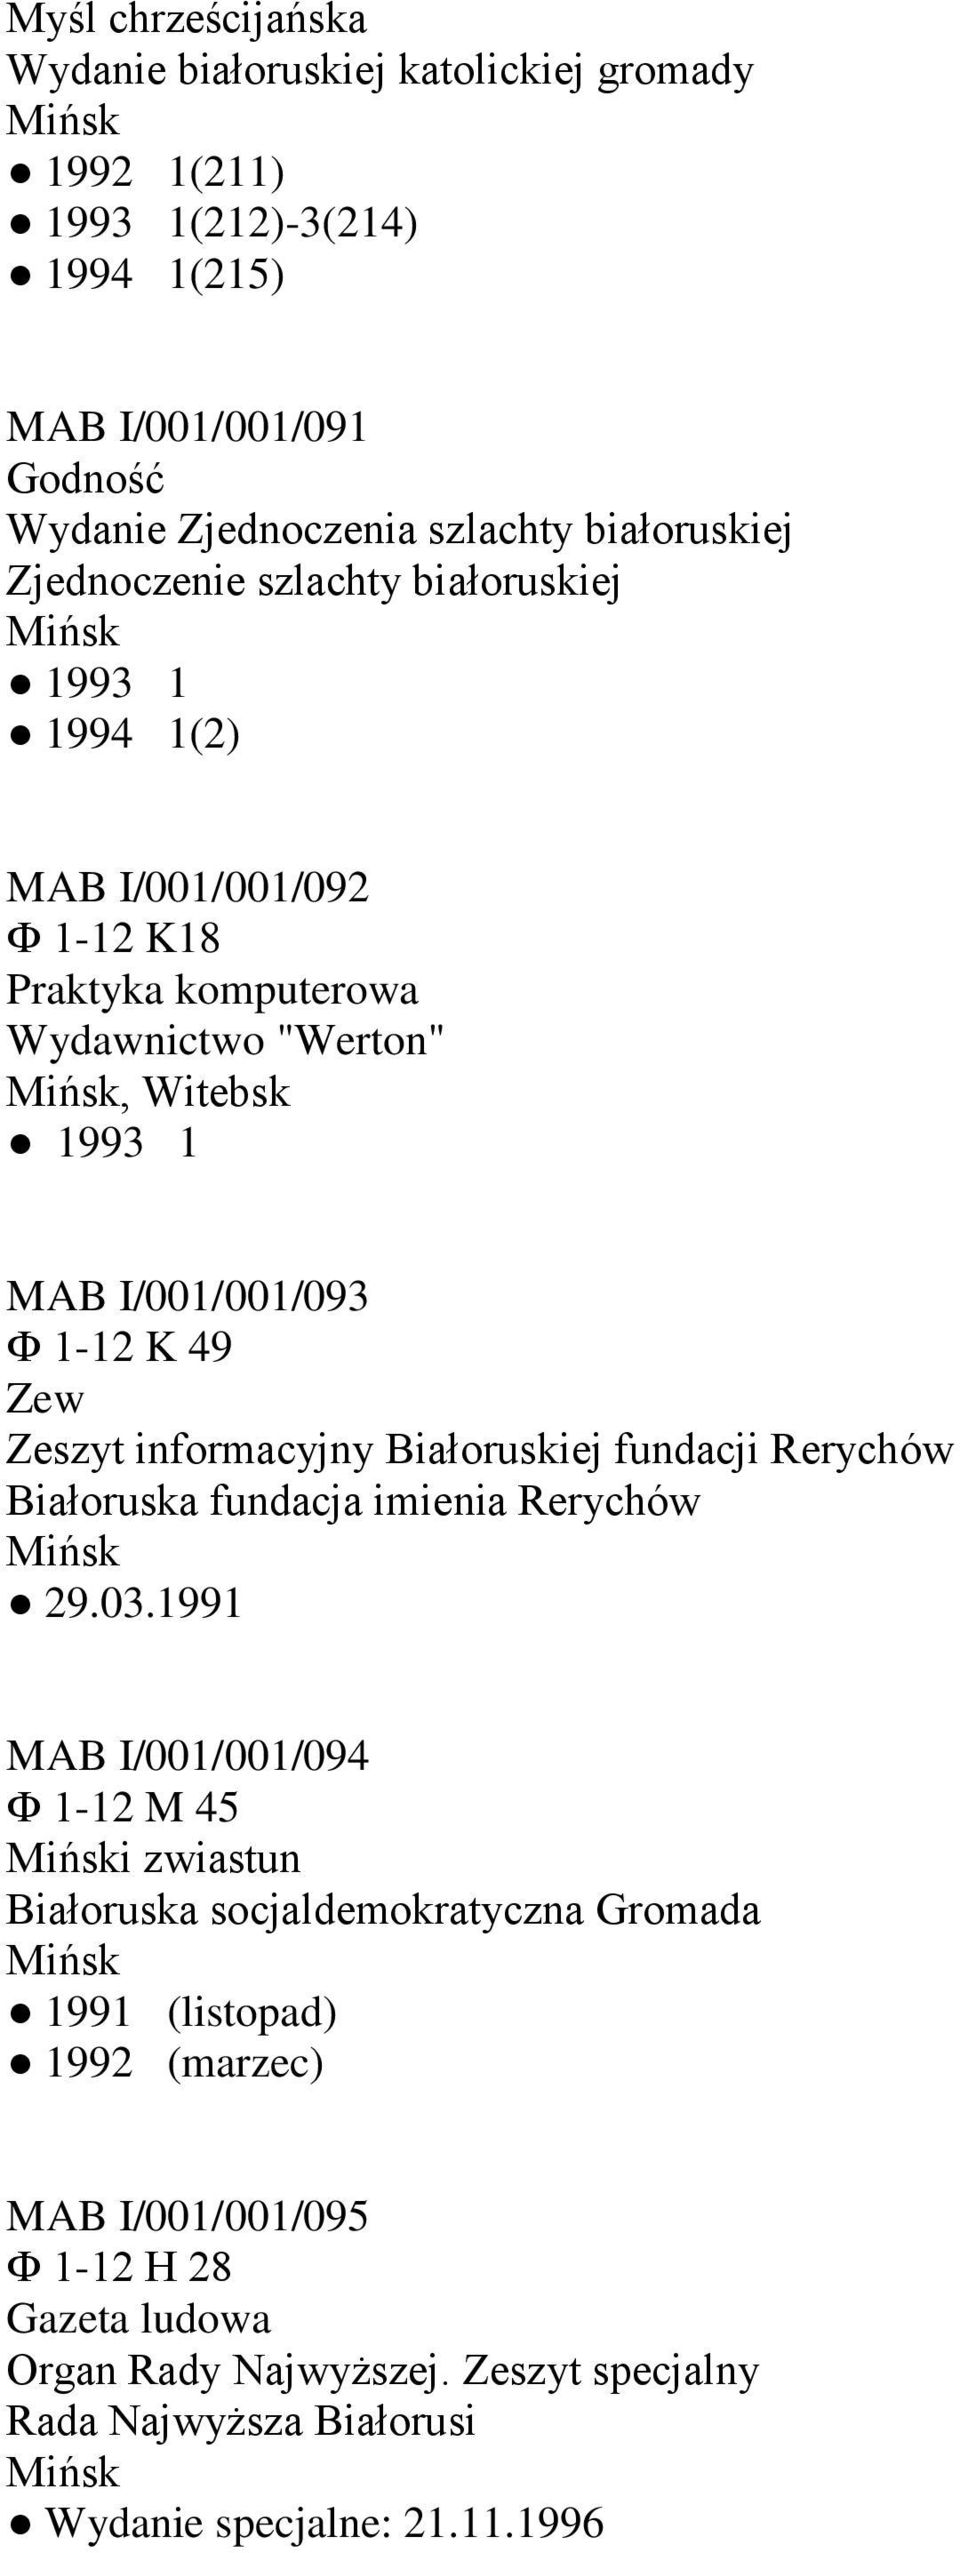 Zeszyt informacyjny Białoruskiej fundacji Rerychów Białoruska fundacja imienia Rerychów 29.03.